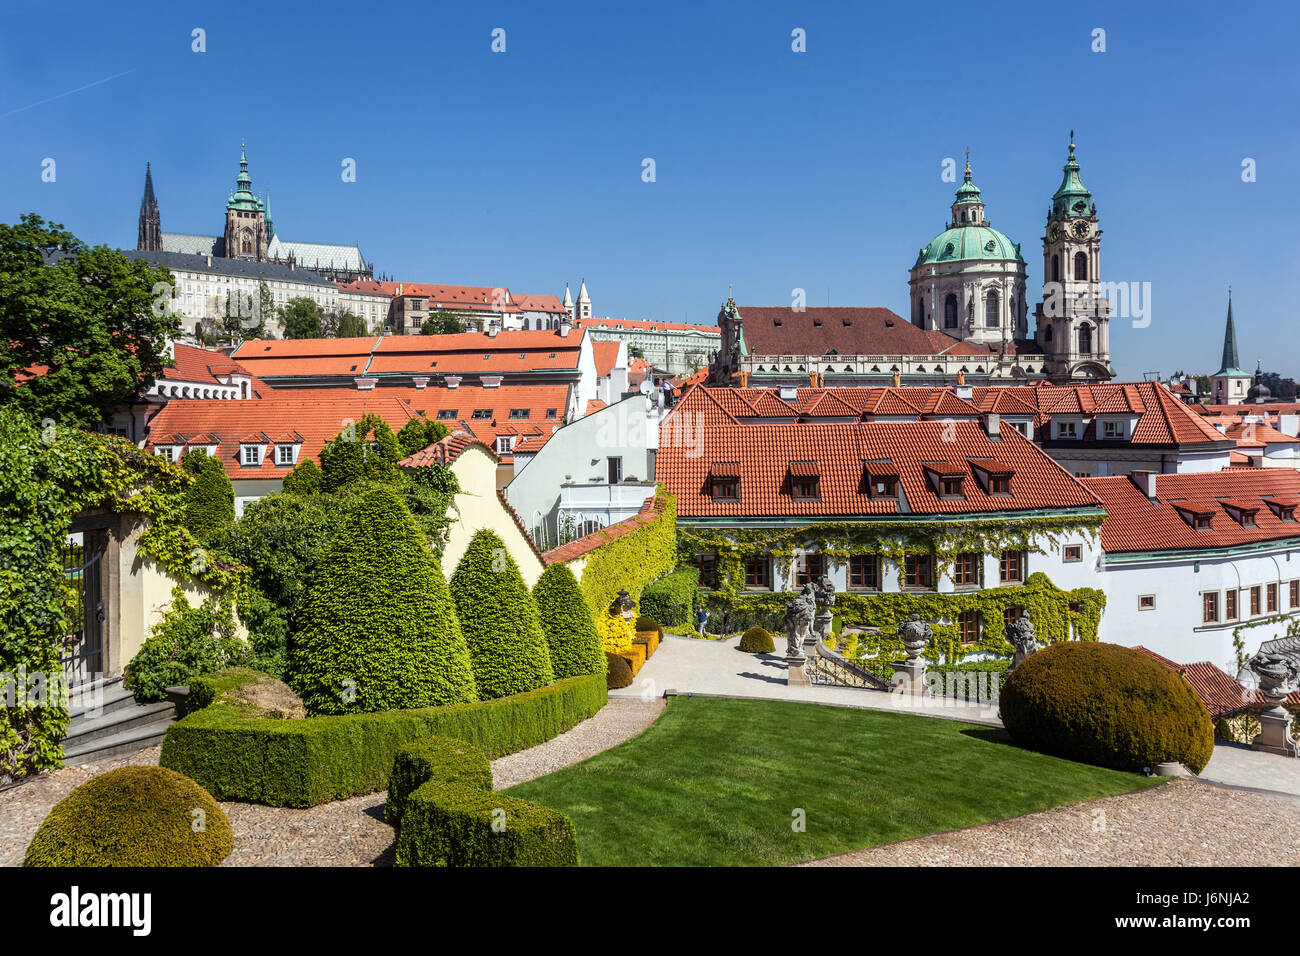 Jardins de Prague, jardin de Vrtba Prague Mala Strana République tchèque Europe Château de Prague Voir de beaux paysages avec l'église Saint-Nicolas Banque D'Images